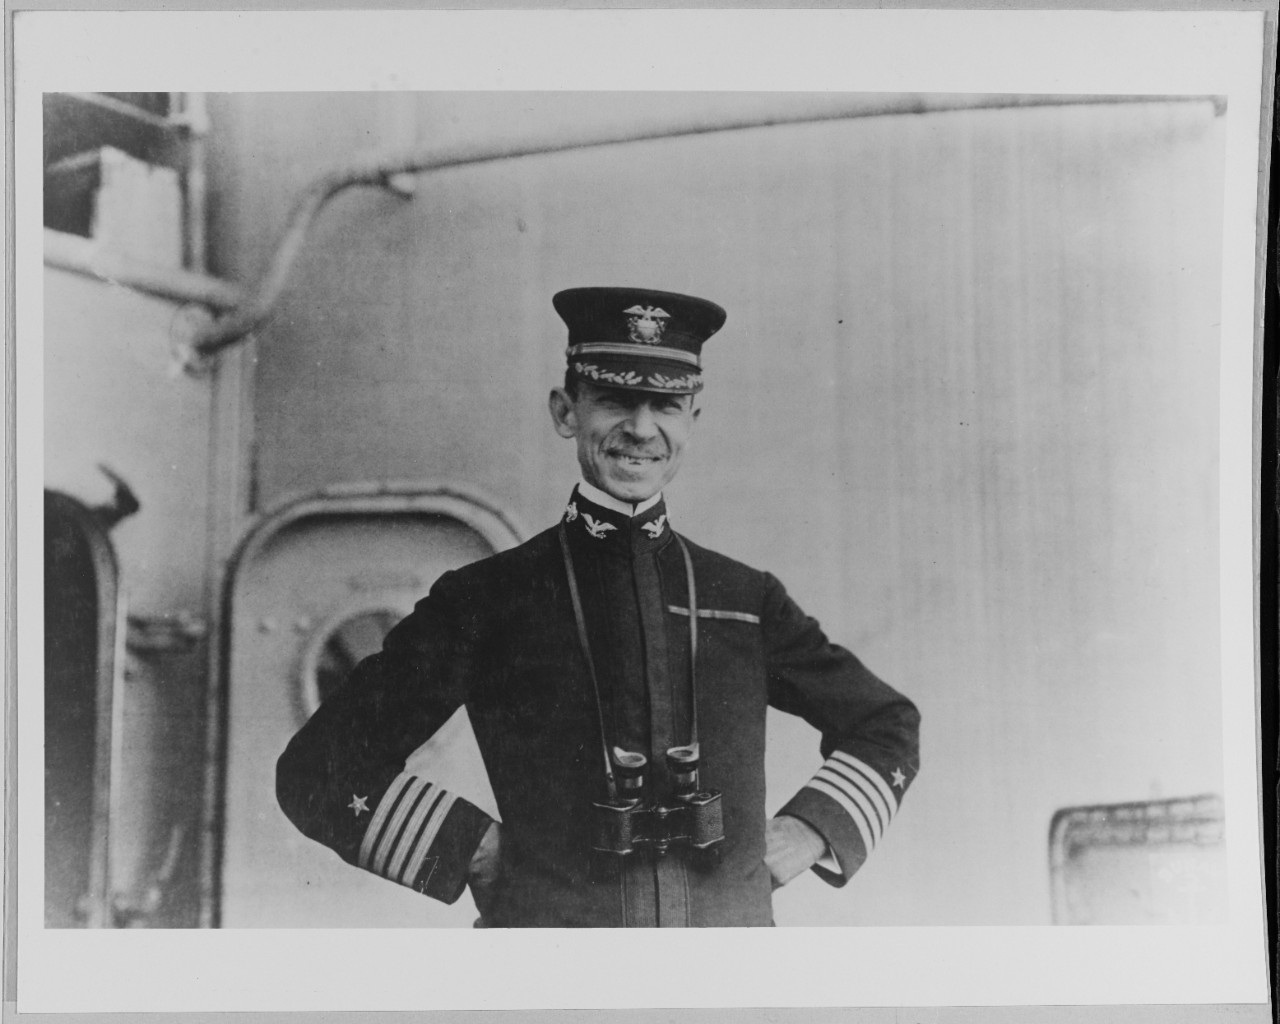 Captain Louis M. Nulton